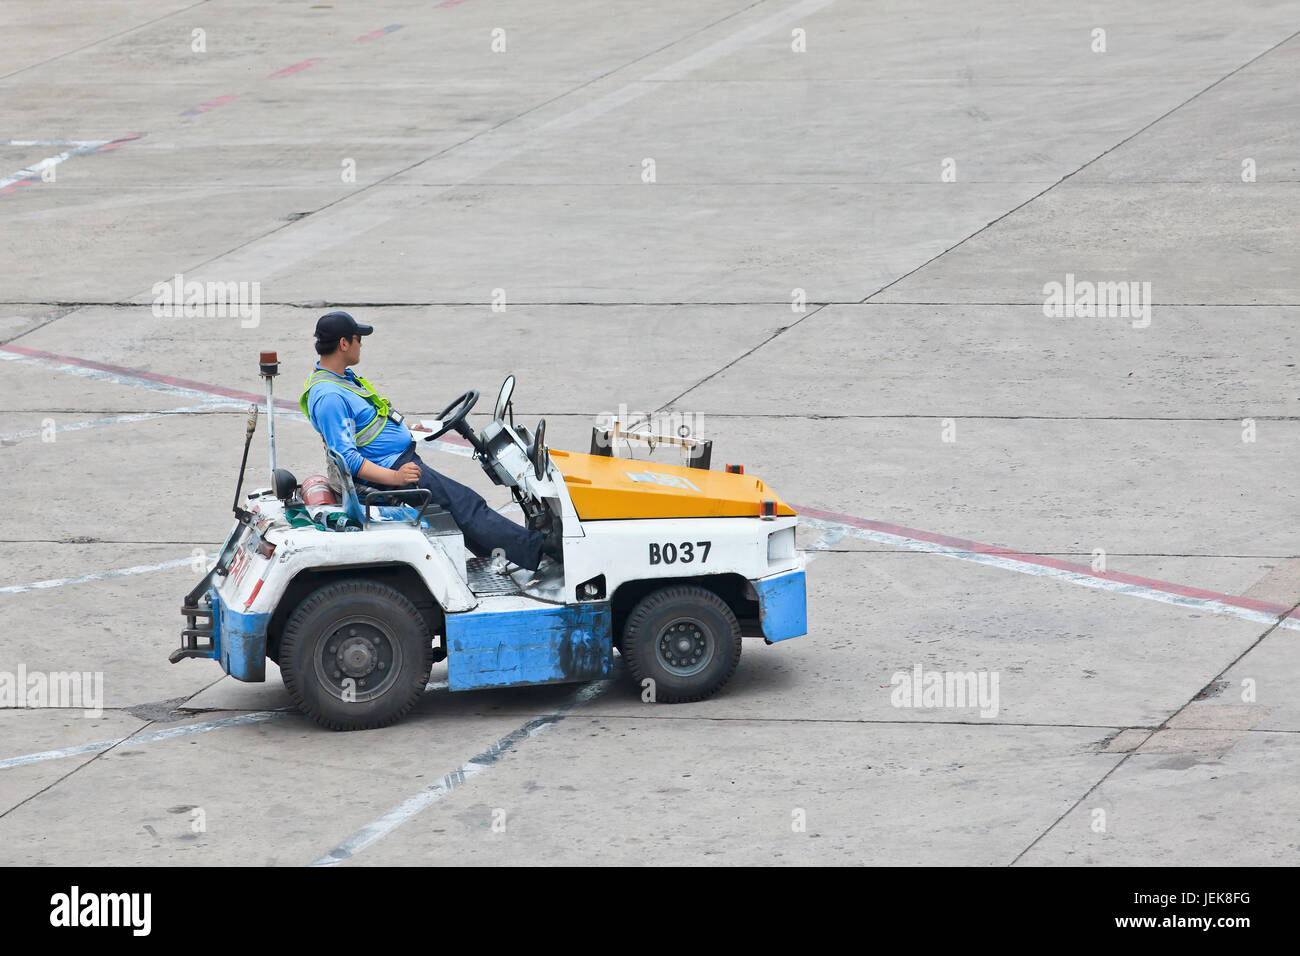 PEKING-MAI 23. 2014. Nissan Schlepper für Dolly Transport auf Beijing Airport. Geschwindigkeit, Effizienz und Genauigkeit sind für die Bodenbearbeitung von entscheidender Bedeutung. Stockfoto